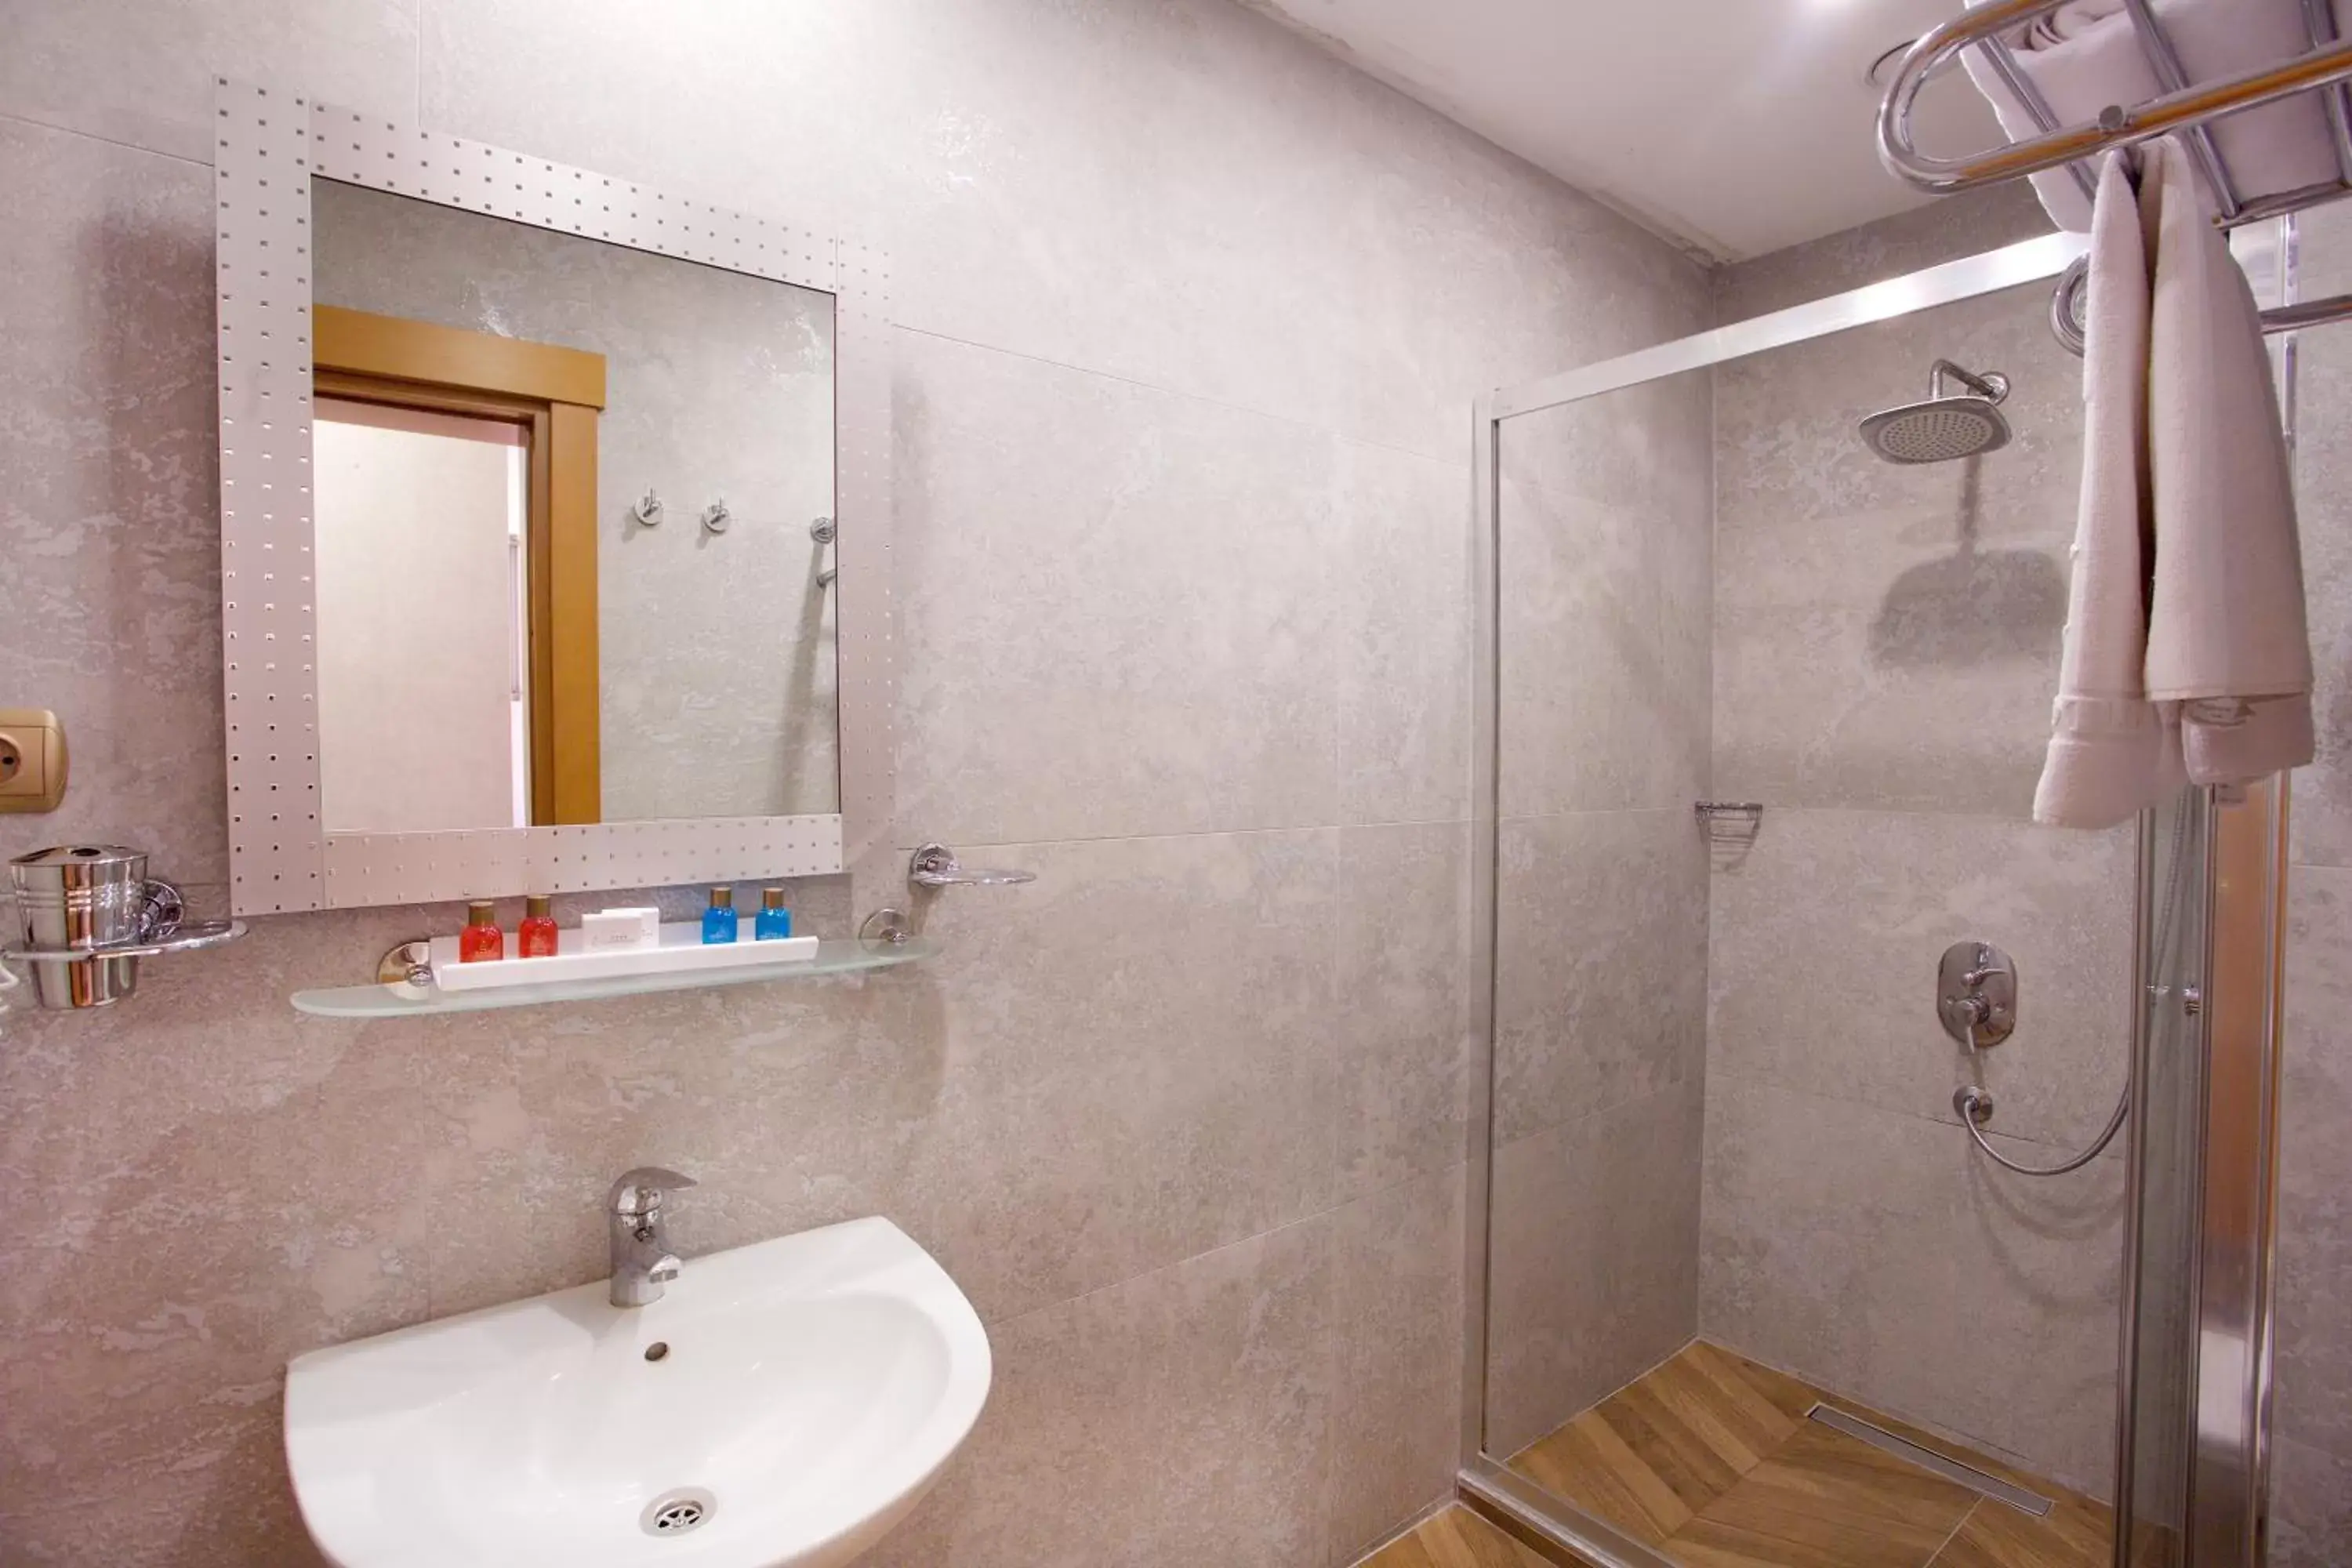 Bathroom in Zagreb Hotel